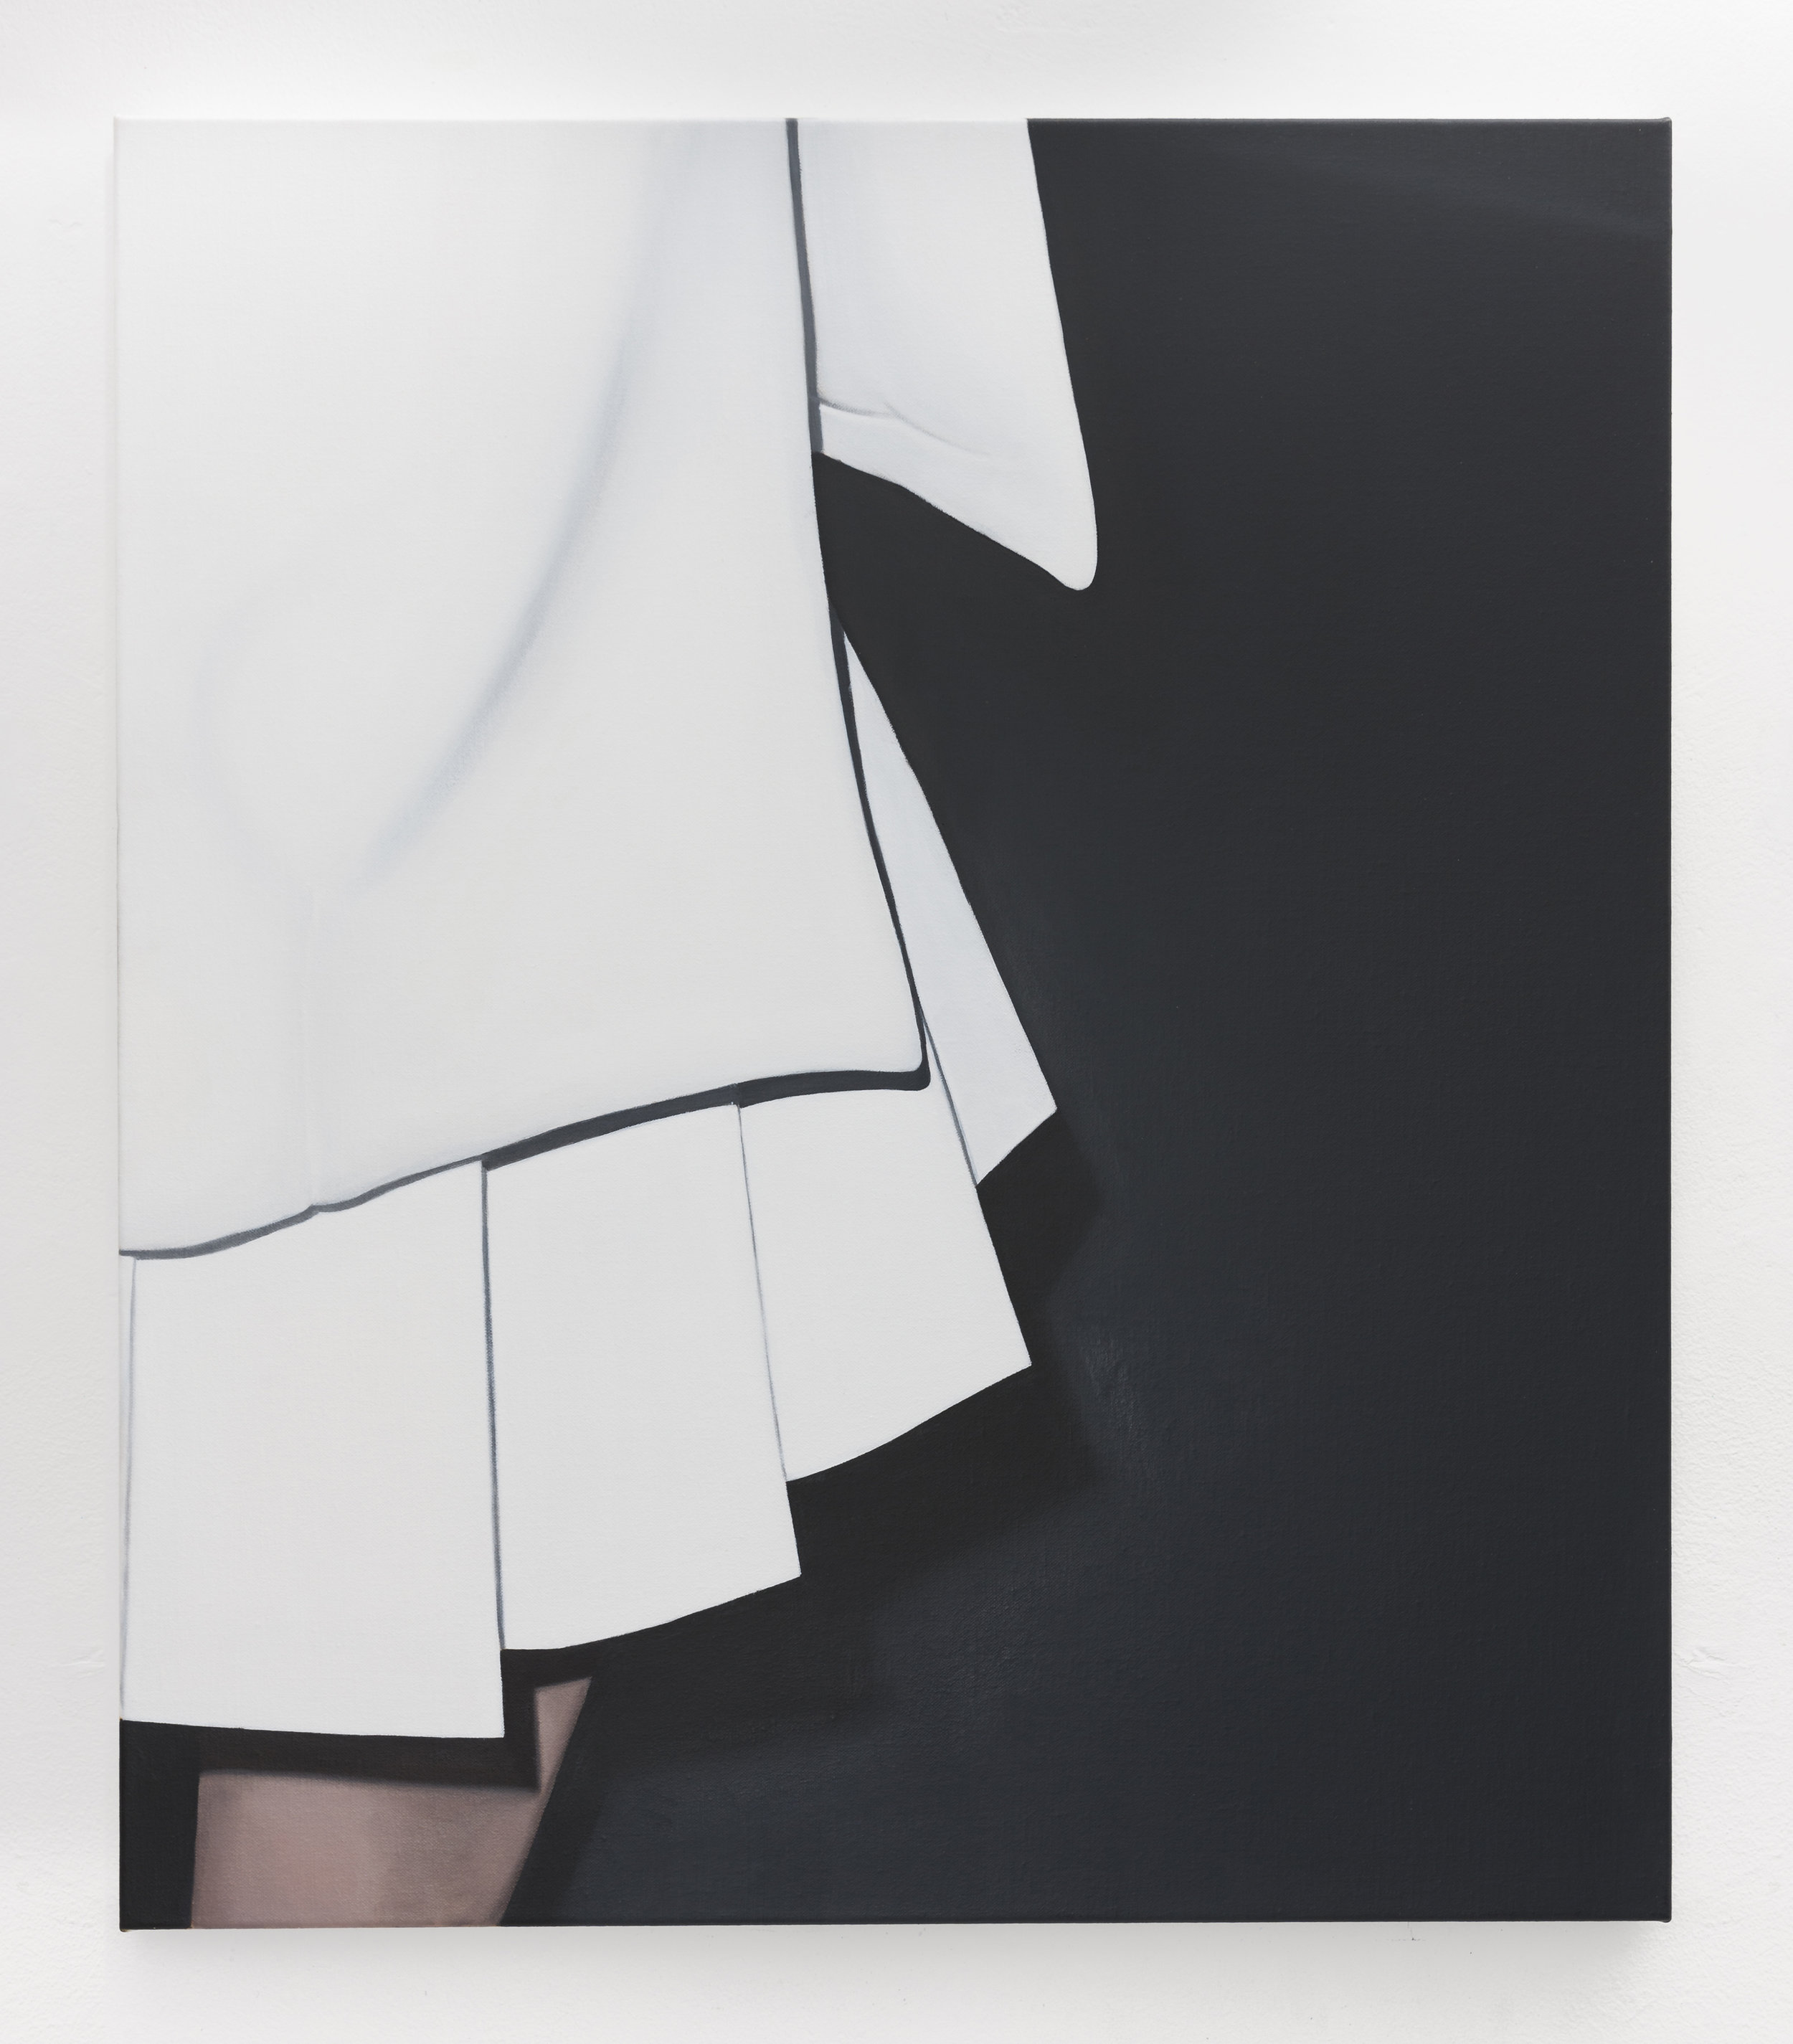  White Dress III | 2018 | oil on linen | 70 x 60 cm | 27.6 x 23.6 in | Photo Lee Welch 